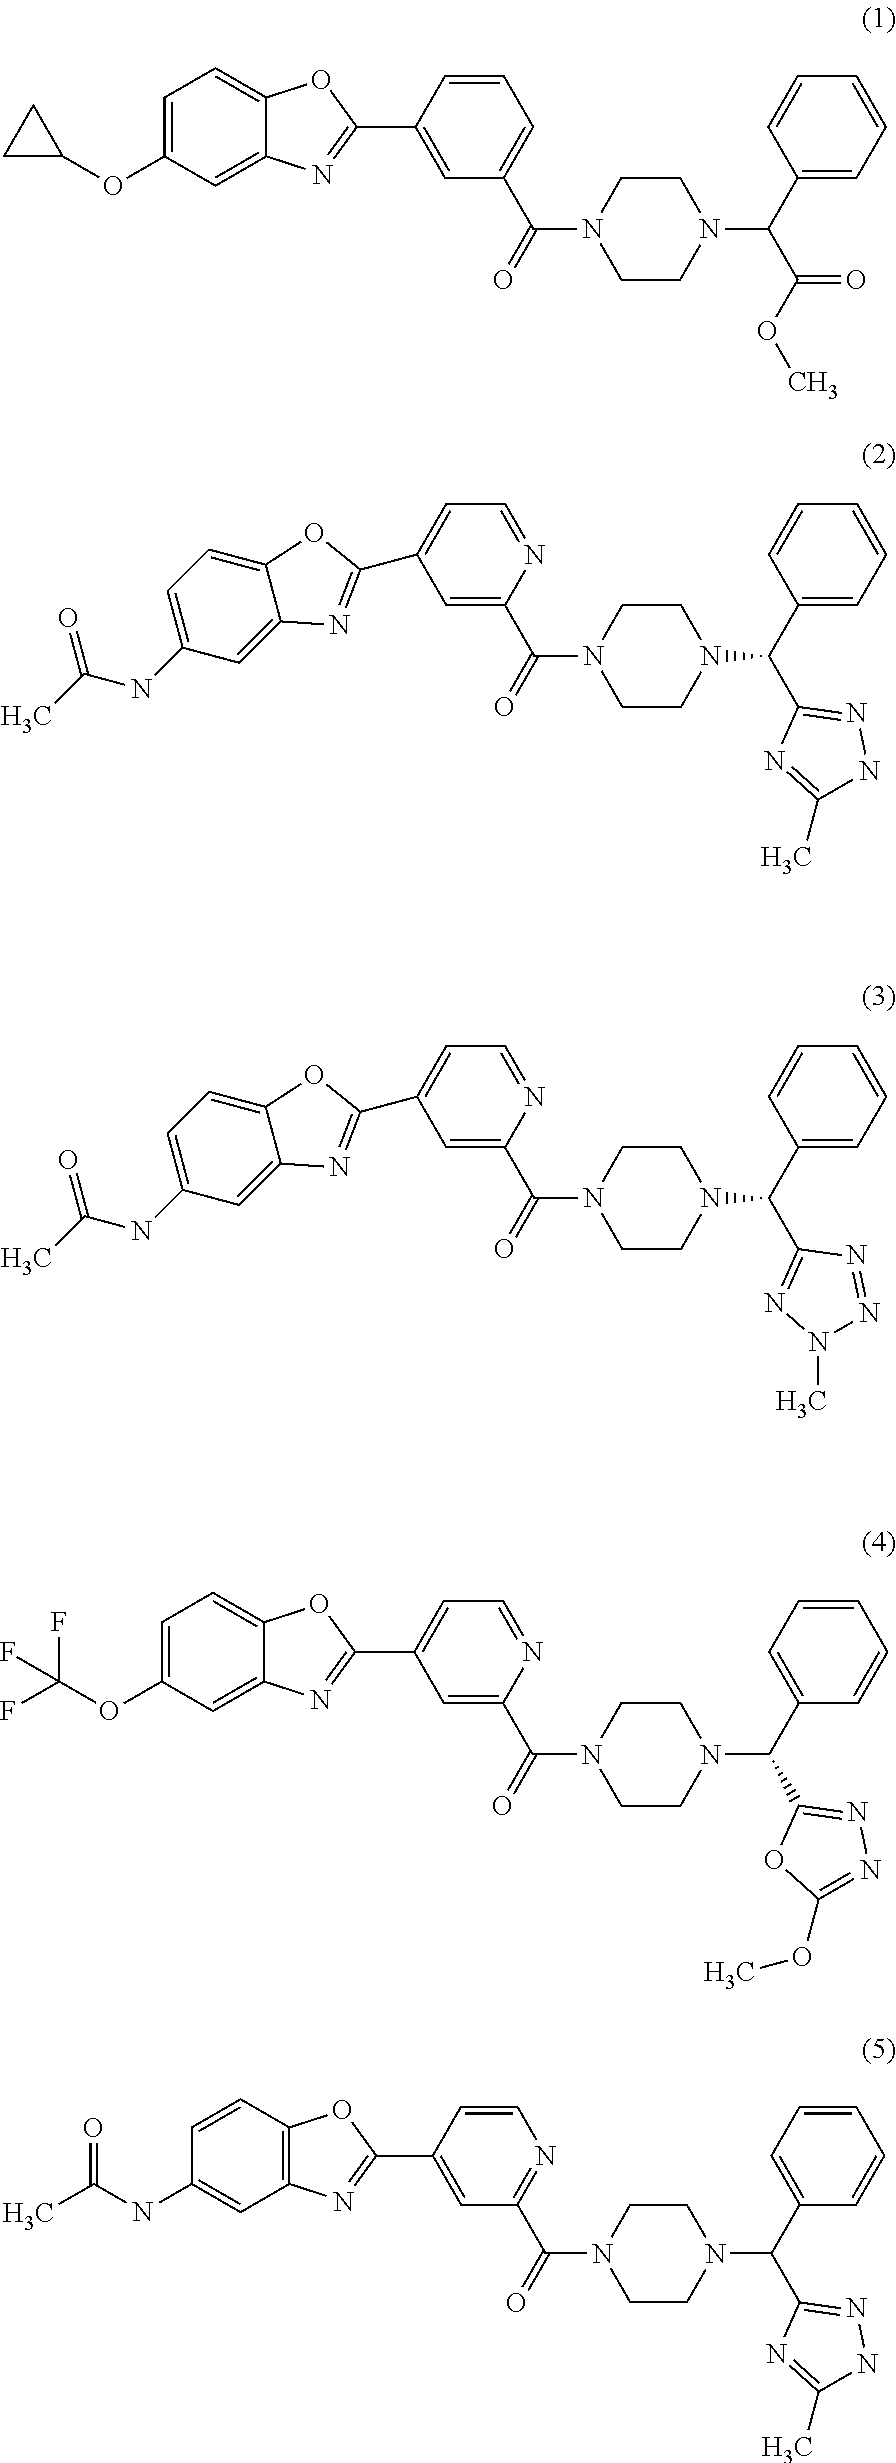 Piperazine derivatives for influenza virus inhibitions